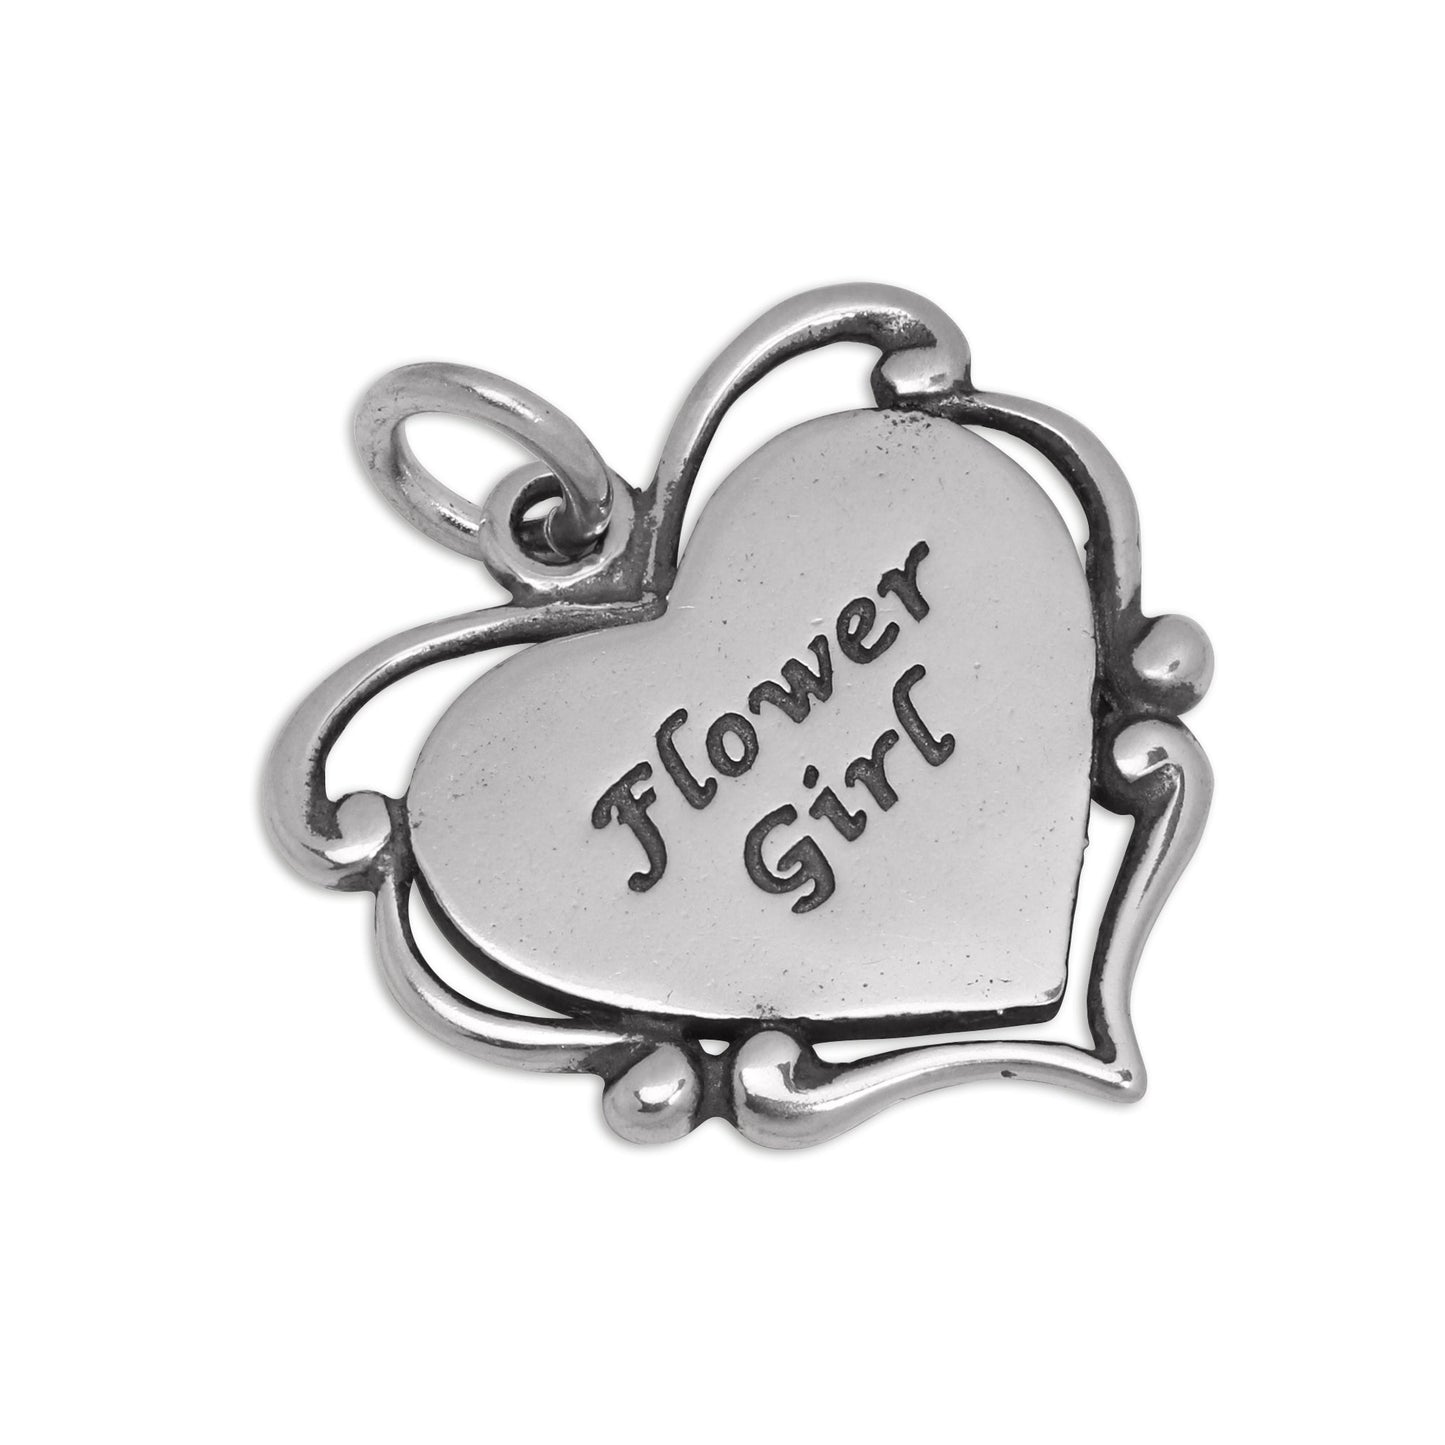 Sterling Silver Flower Girl Heart Charm